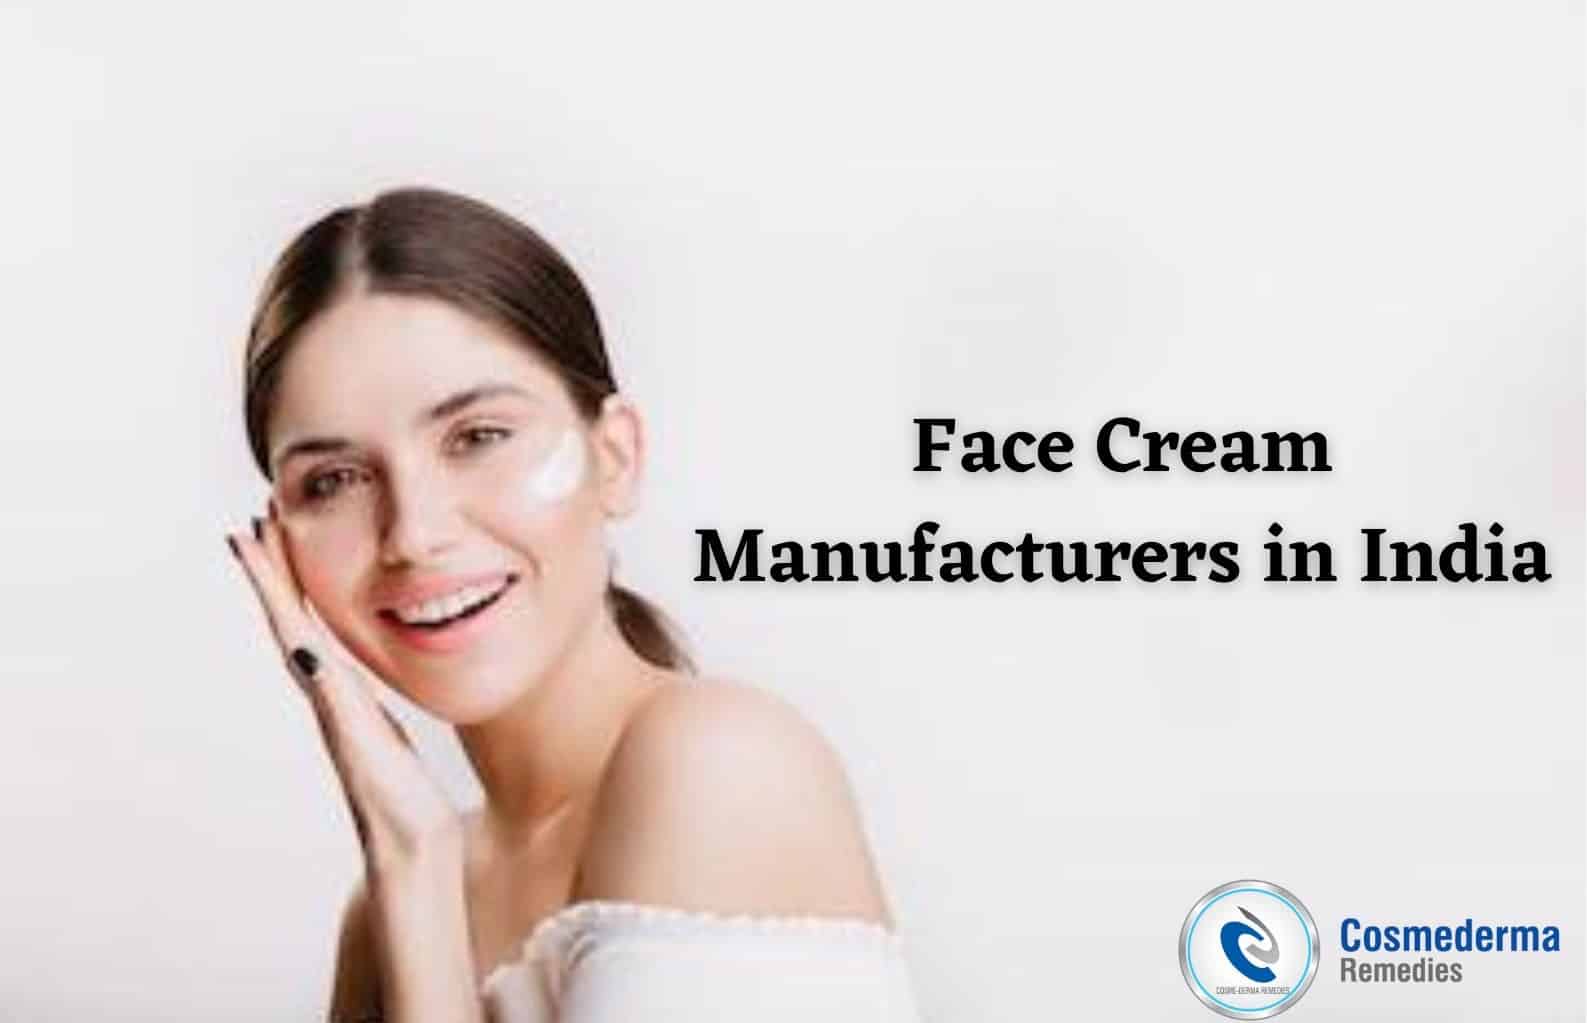 Face Cream Manufacturers in India